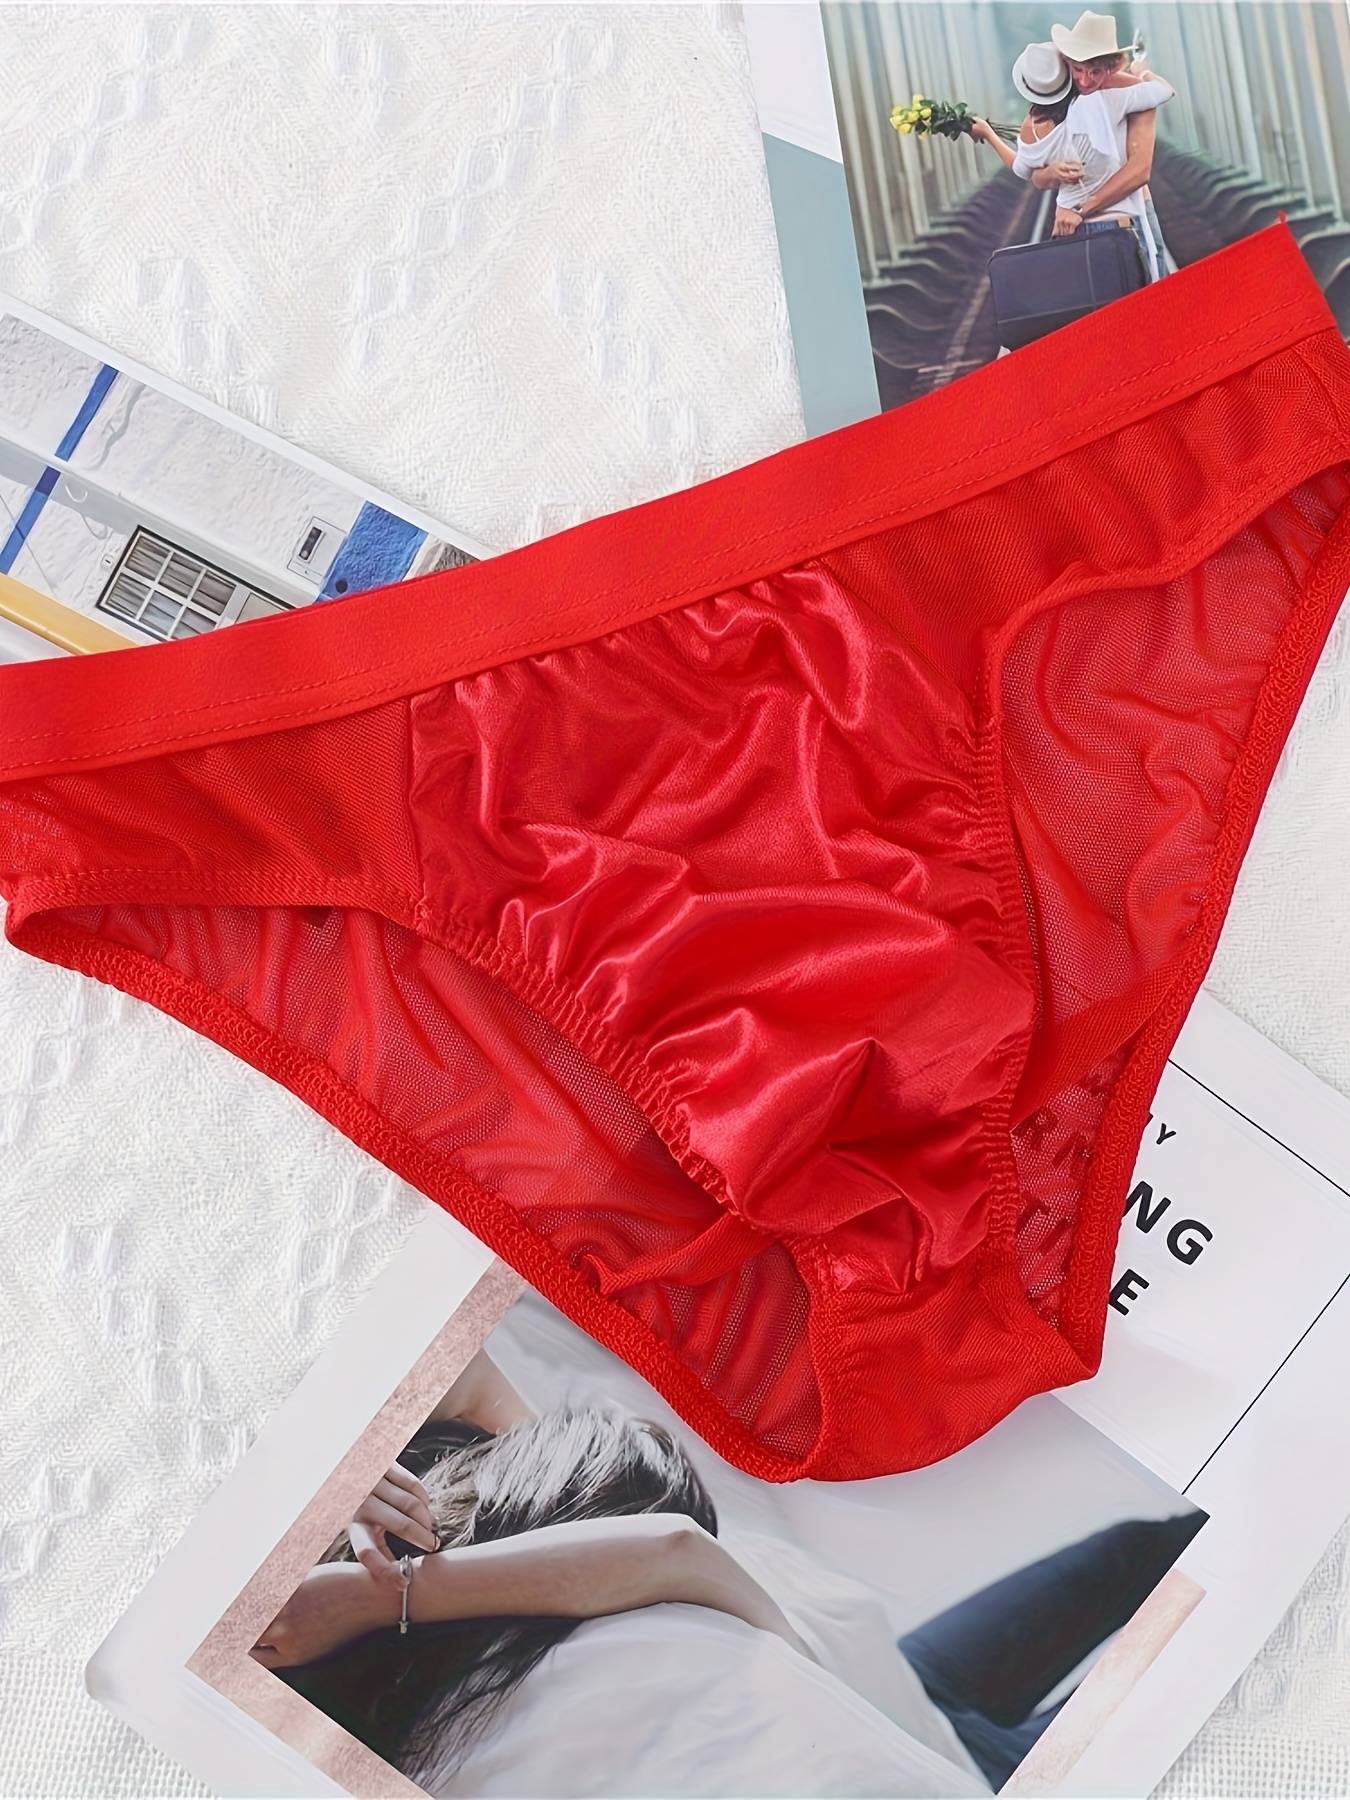 Men's Underwear Semi-transparent Briefs Mens Mesh Breathable Underpants